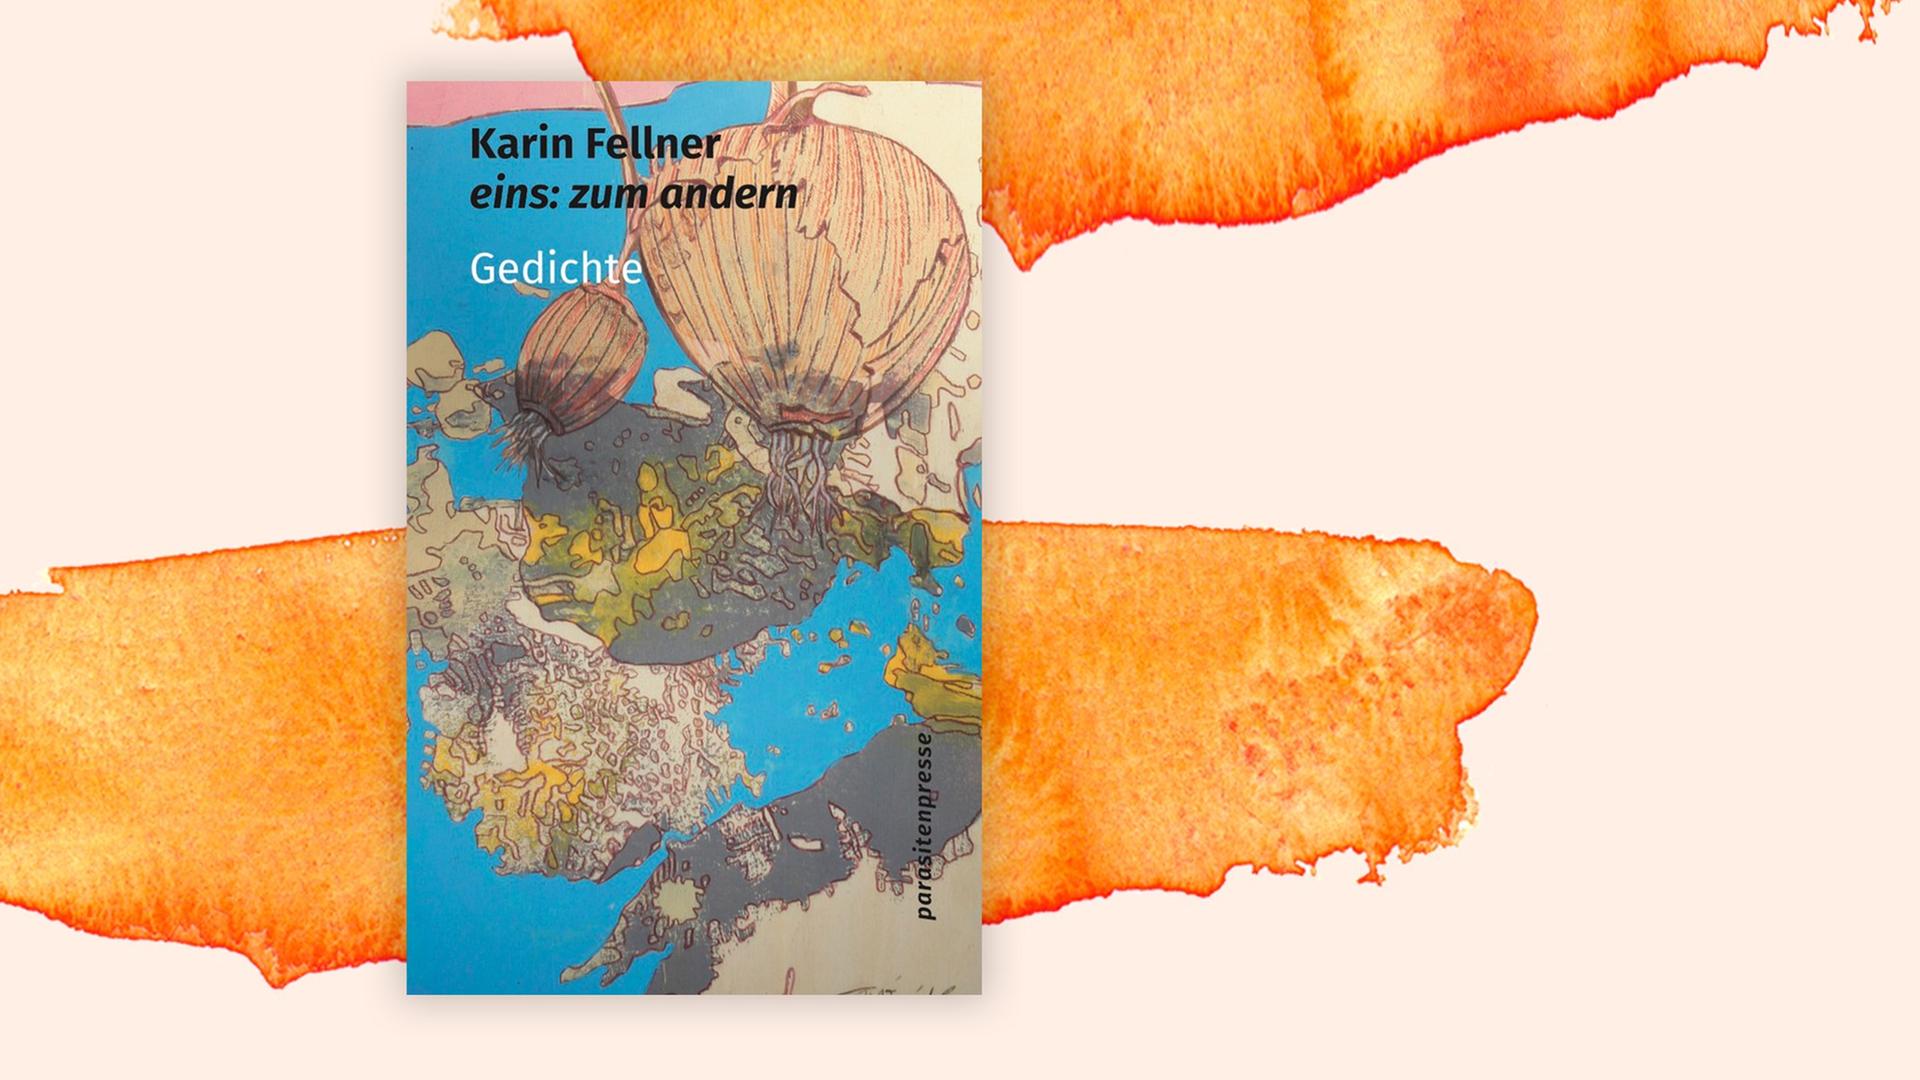 Das Bild zeigt das Buchcover des Gedichtbandes "eins: zum anderen" der Dichterin Karin Fellner.